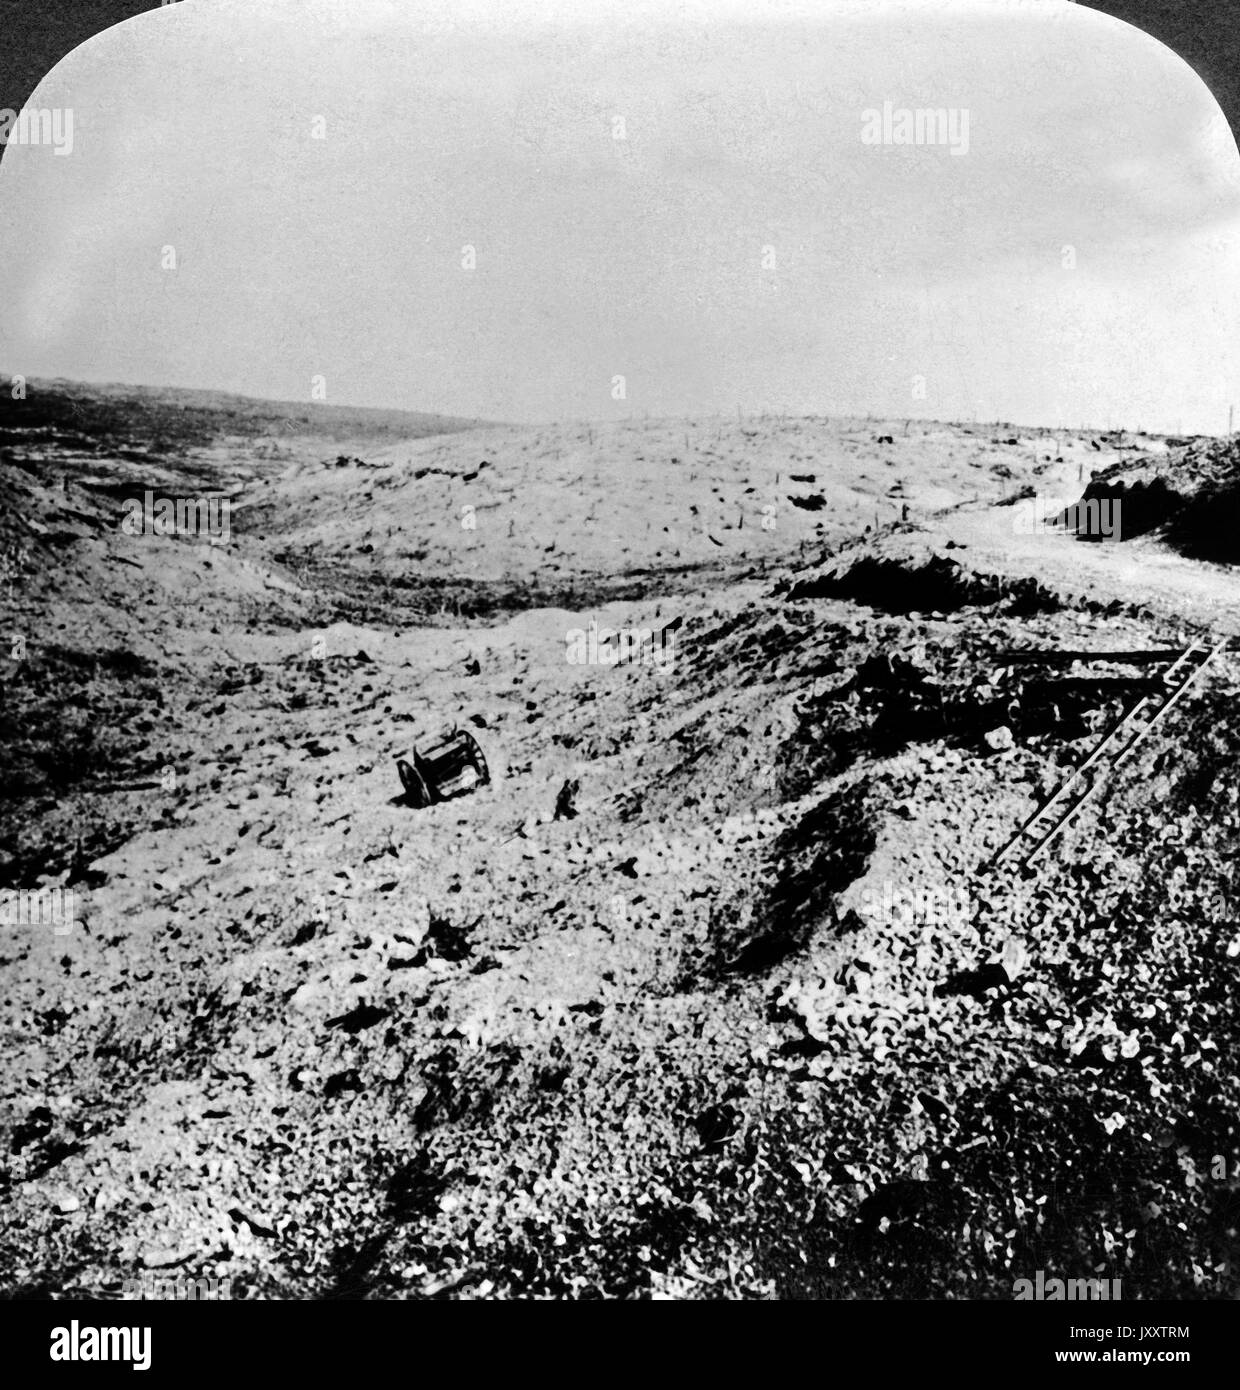 Einst grünende Hügel, jetzt eine desolate Verschwendung - ein Schlachtfeld in Frankreich, 1917. Once verdant hills made a desolate waste, a battlefield in France, 1917. Stock Photo